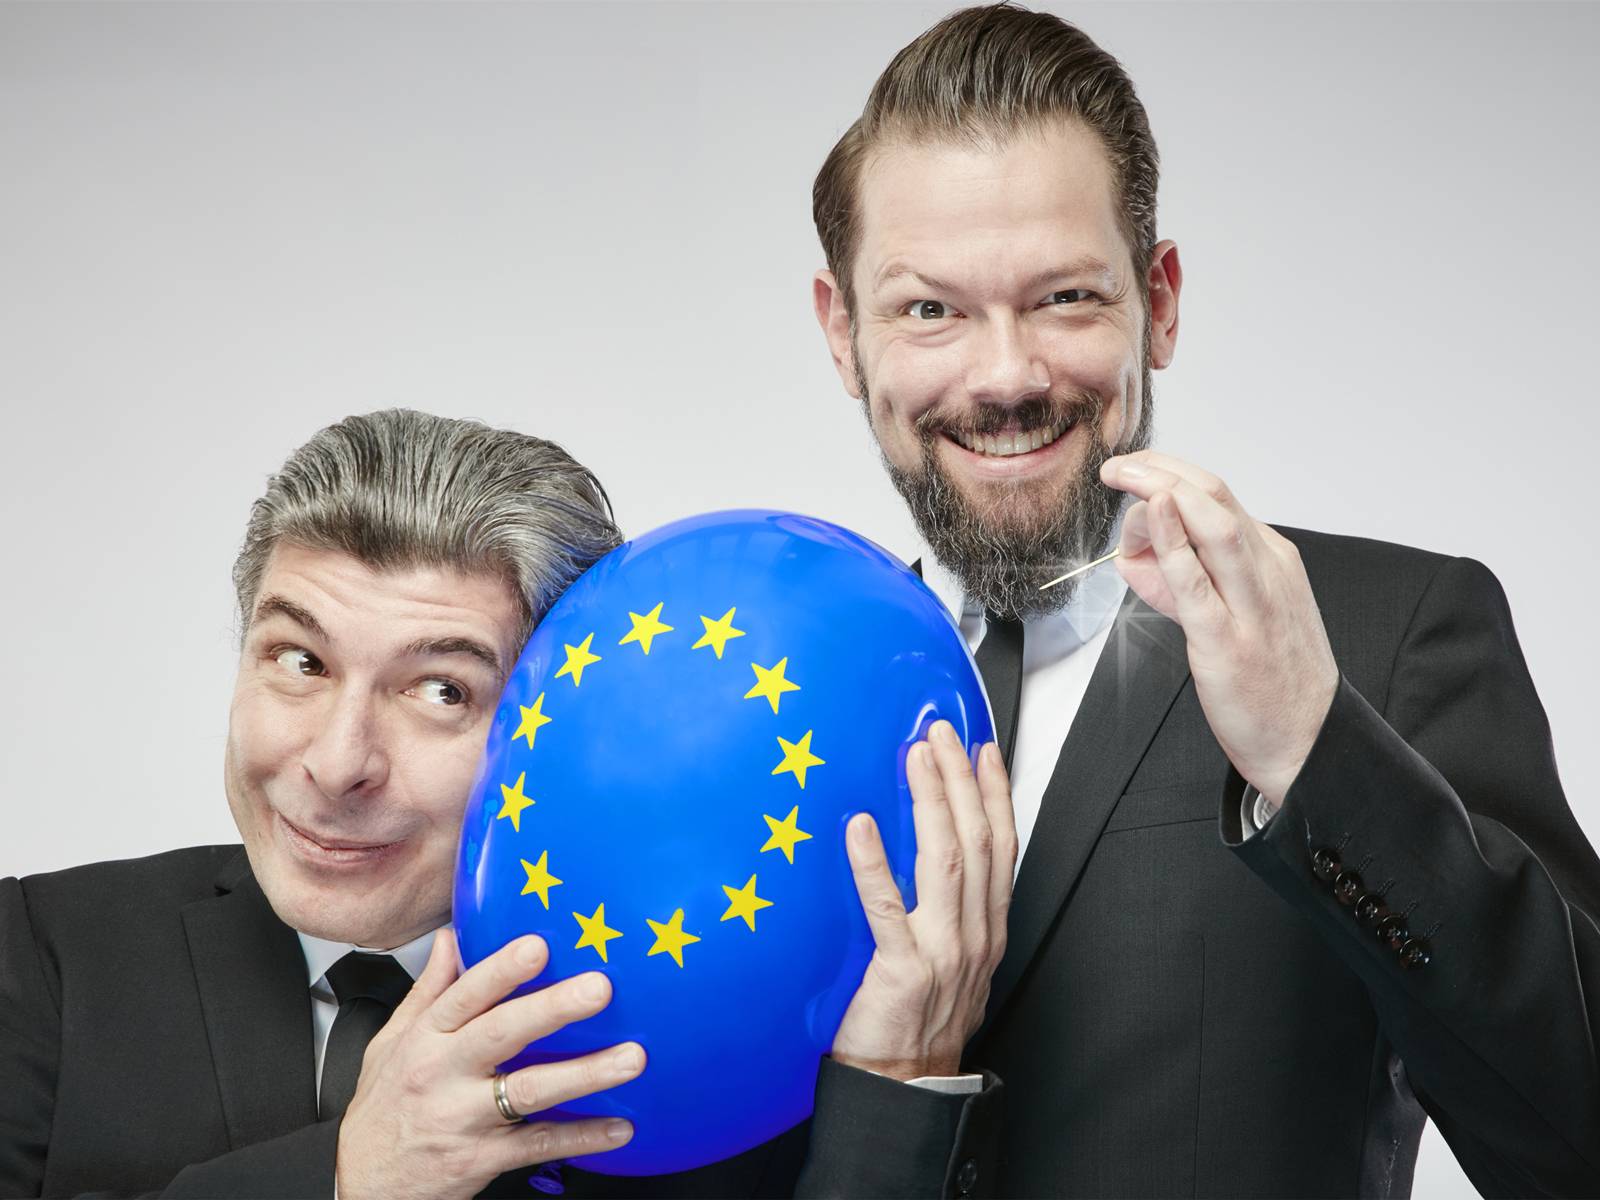 Zwei Männer, einer hält einen Europa-Luftballon, der andere eine Nadel.